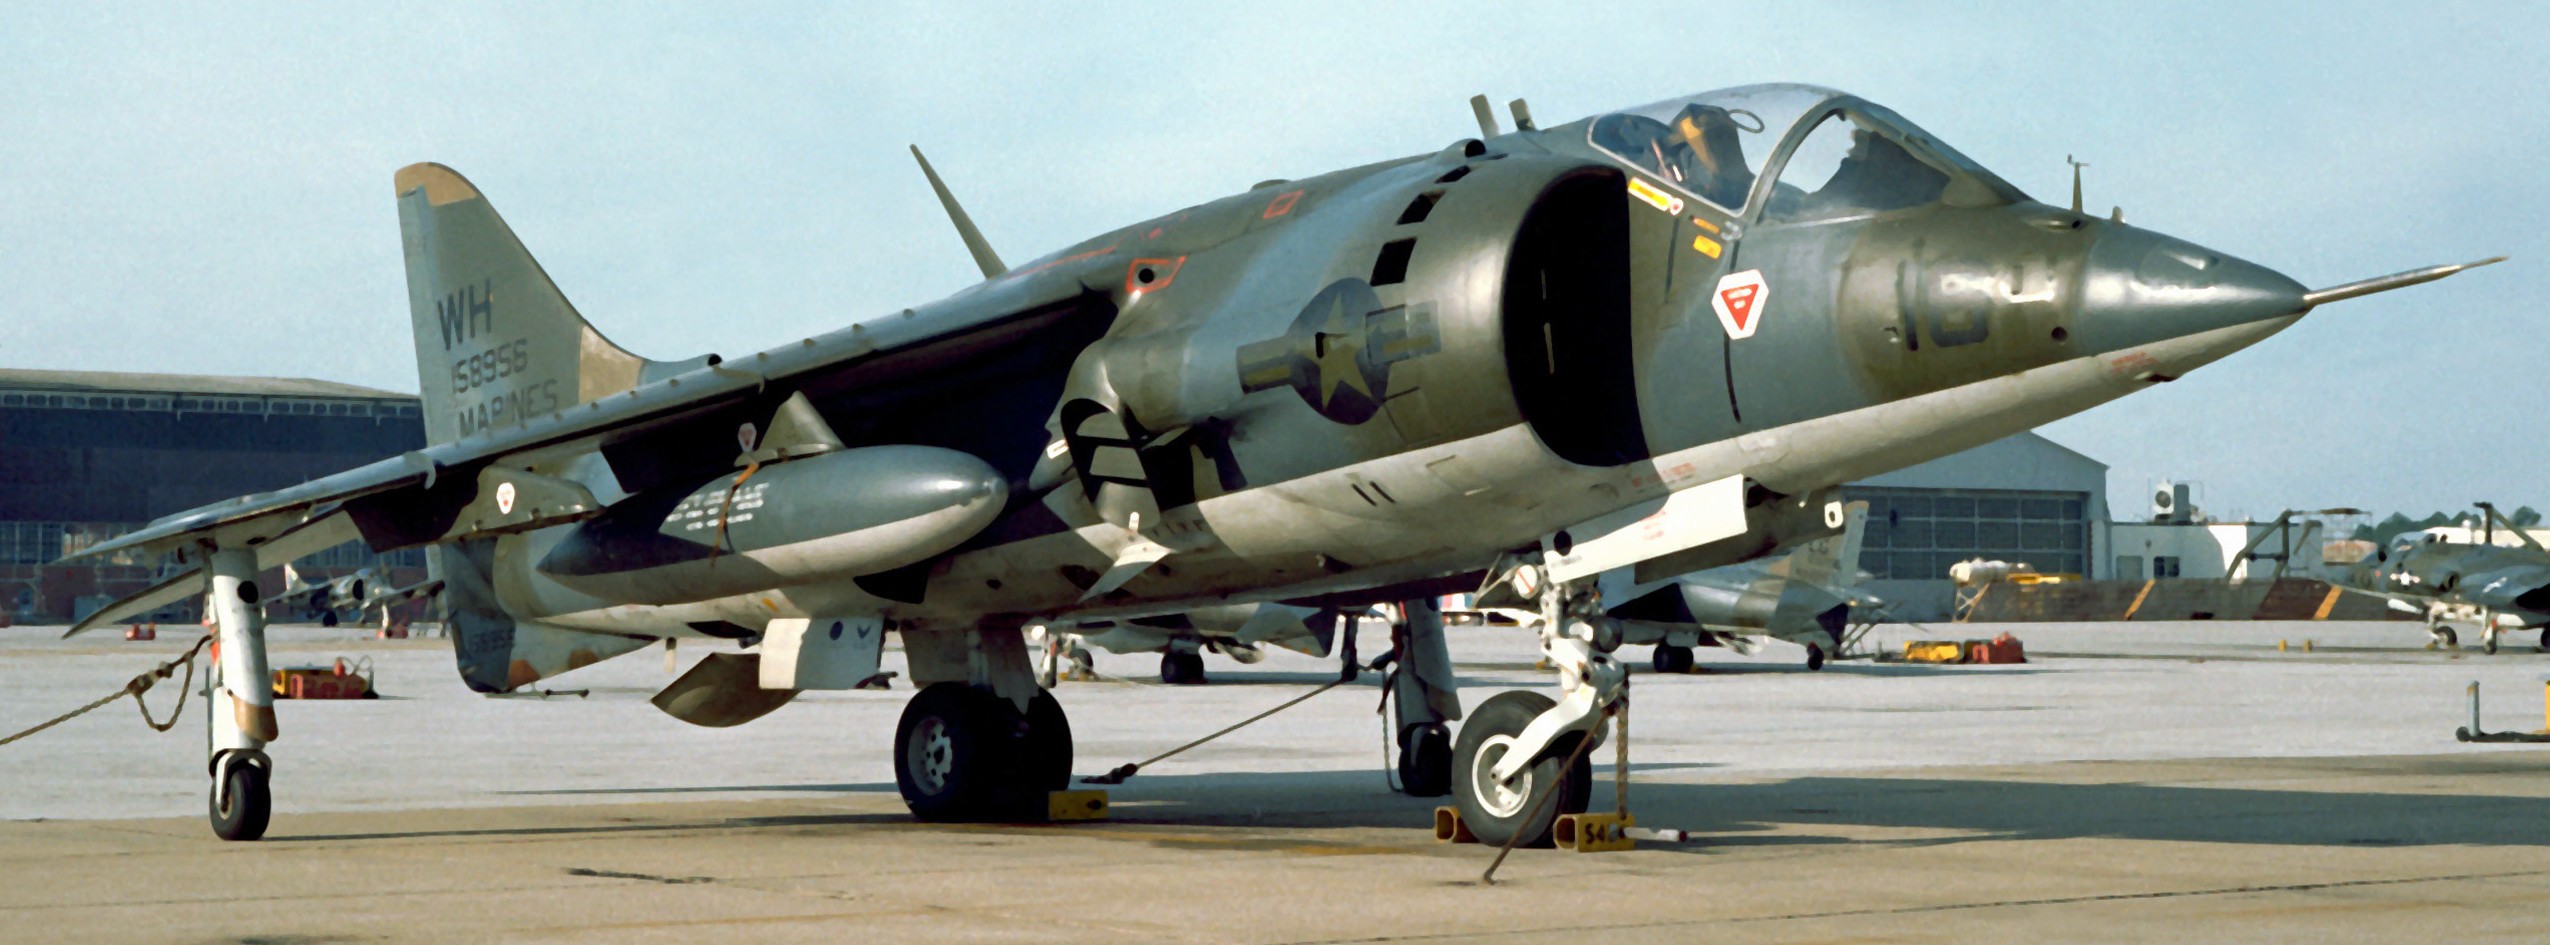 Av 08fb. Av-8a Harrier. Харриер 2 самолет. Харриер av-8a самолет. Hasegawa av-8a Harrier.